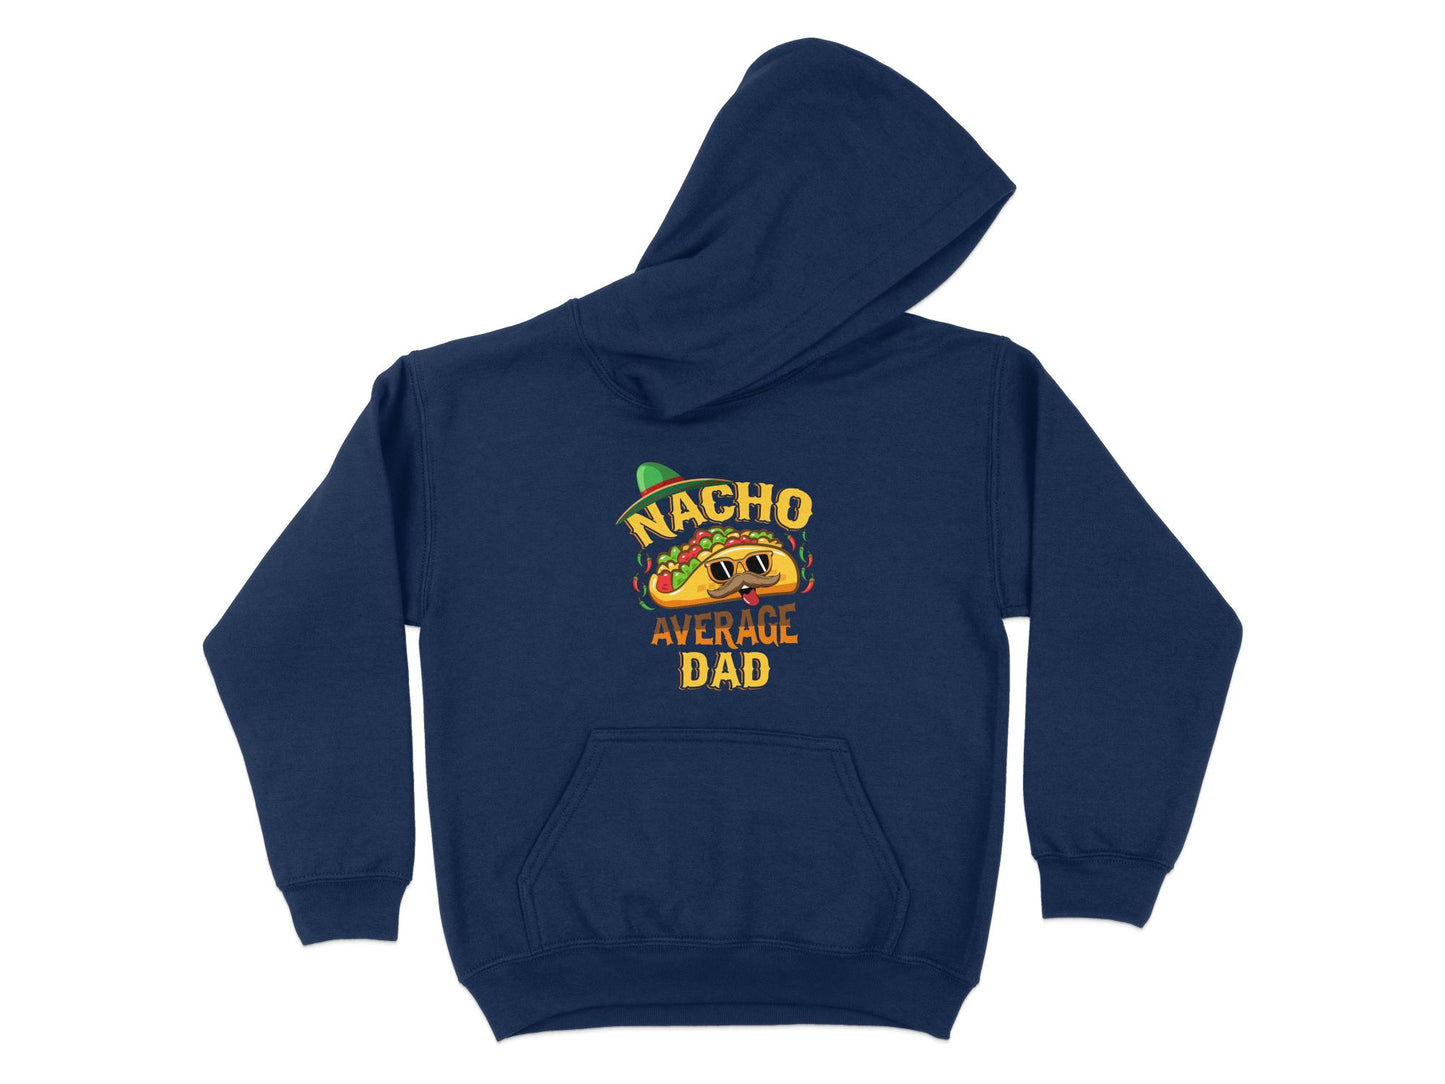 Nacho Average Dad Hoodie, navy blue